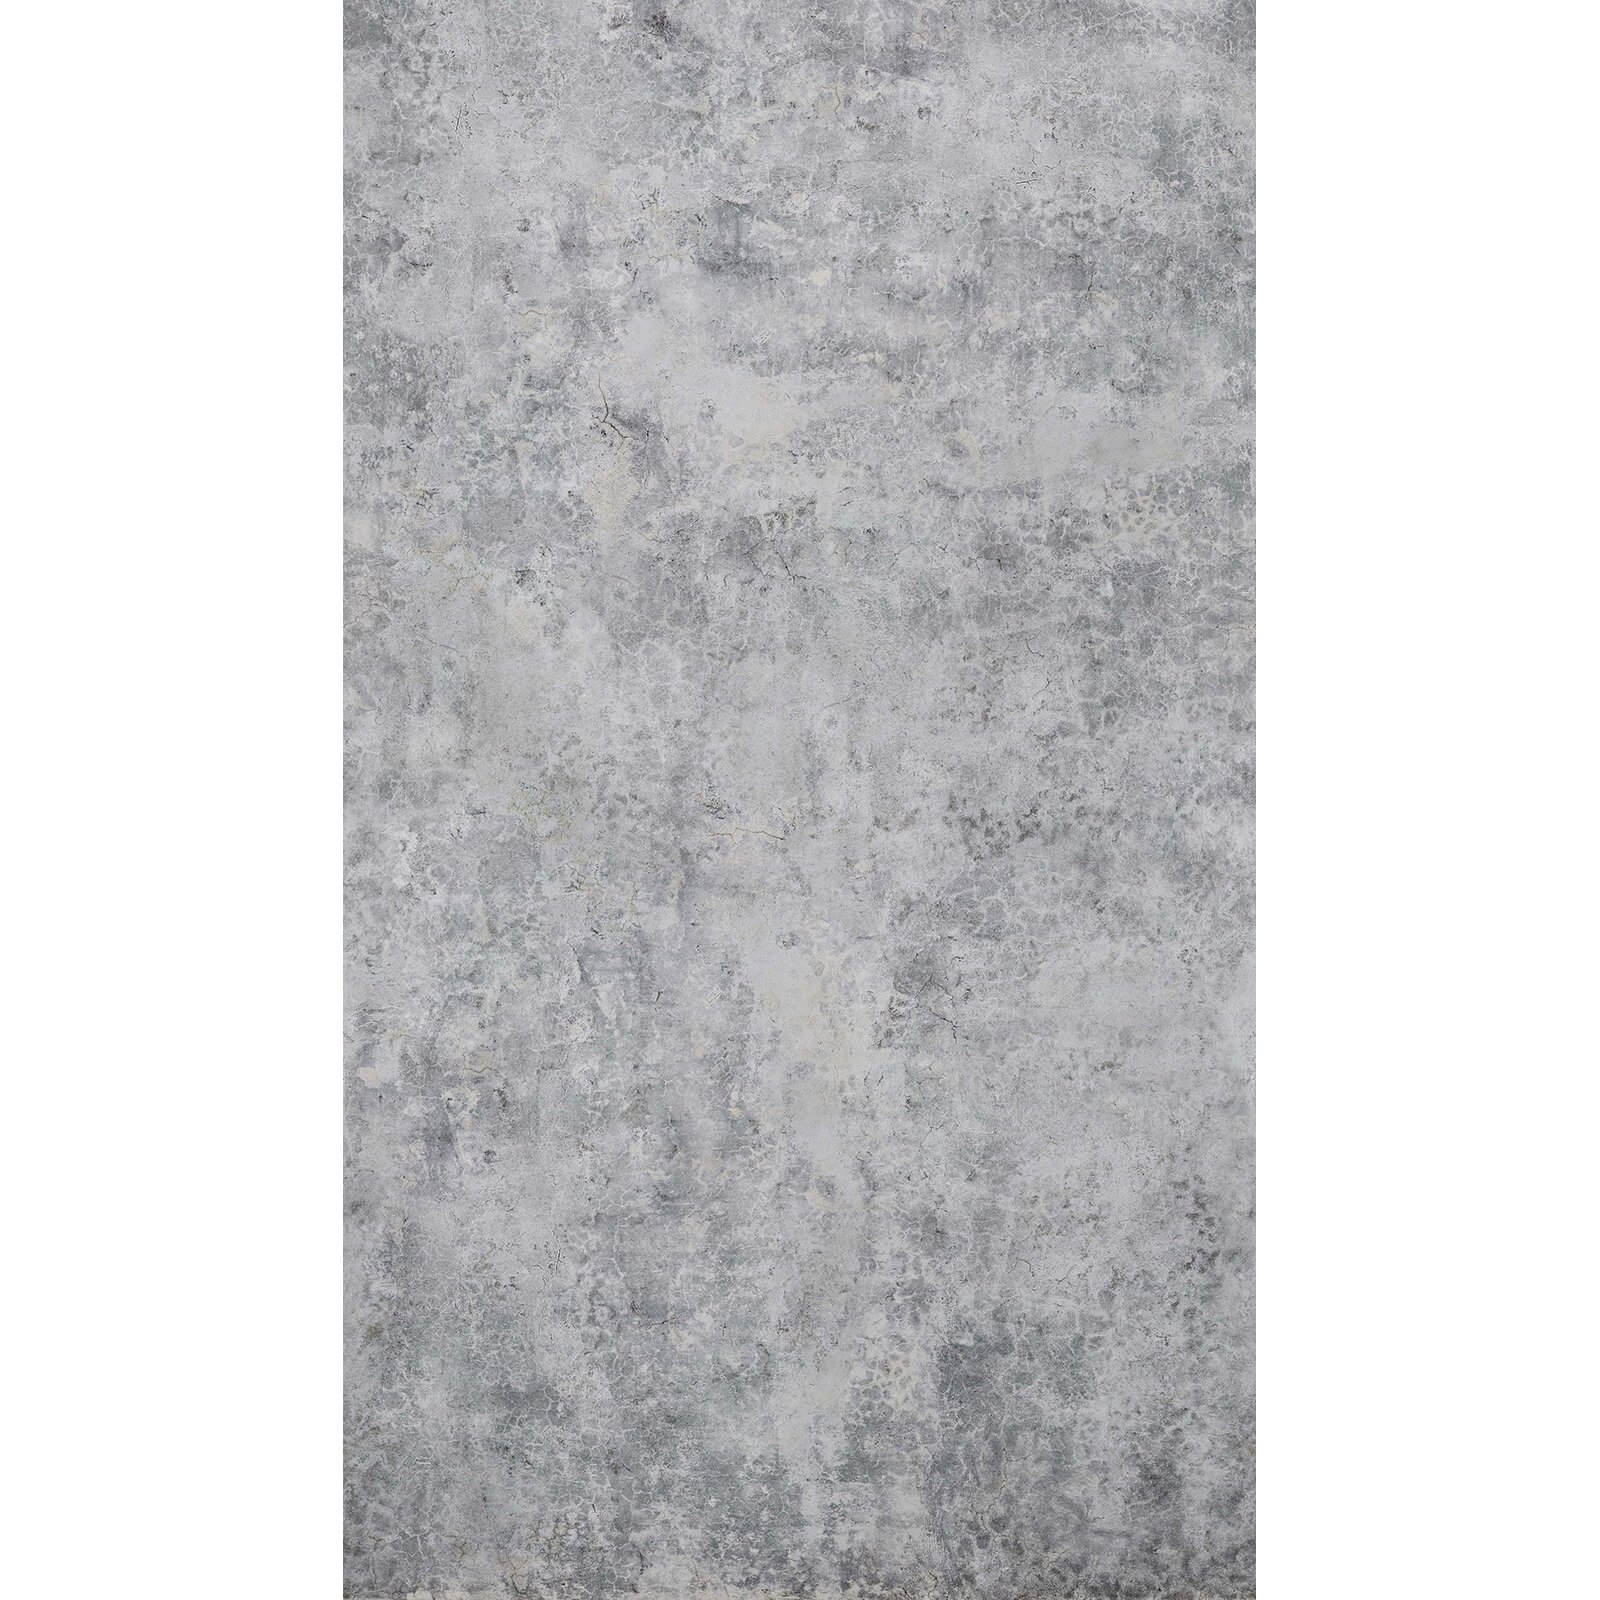 Grandeco Concrete Grey Digital Wallpaper Mural